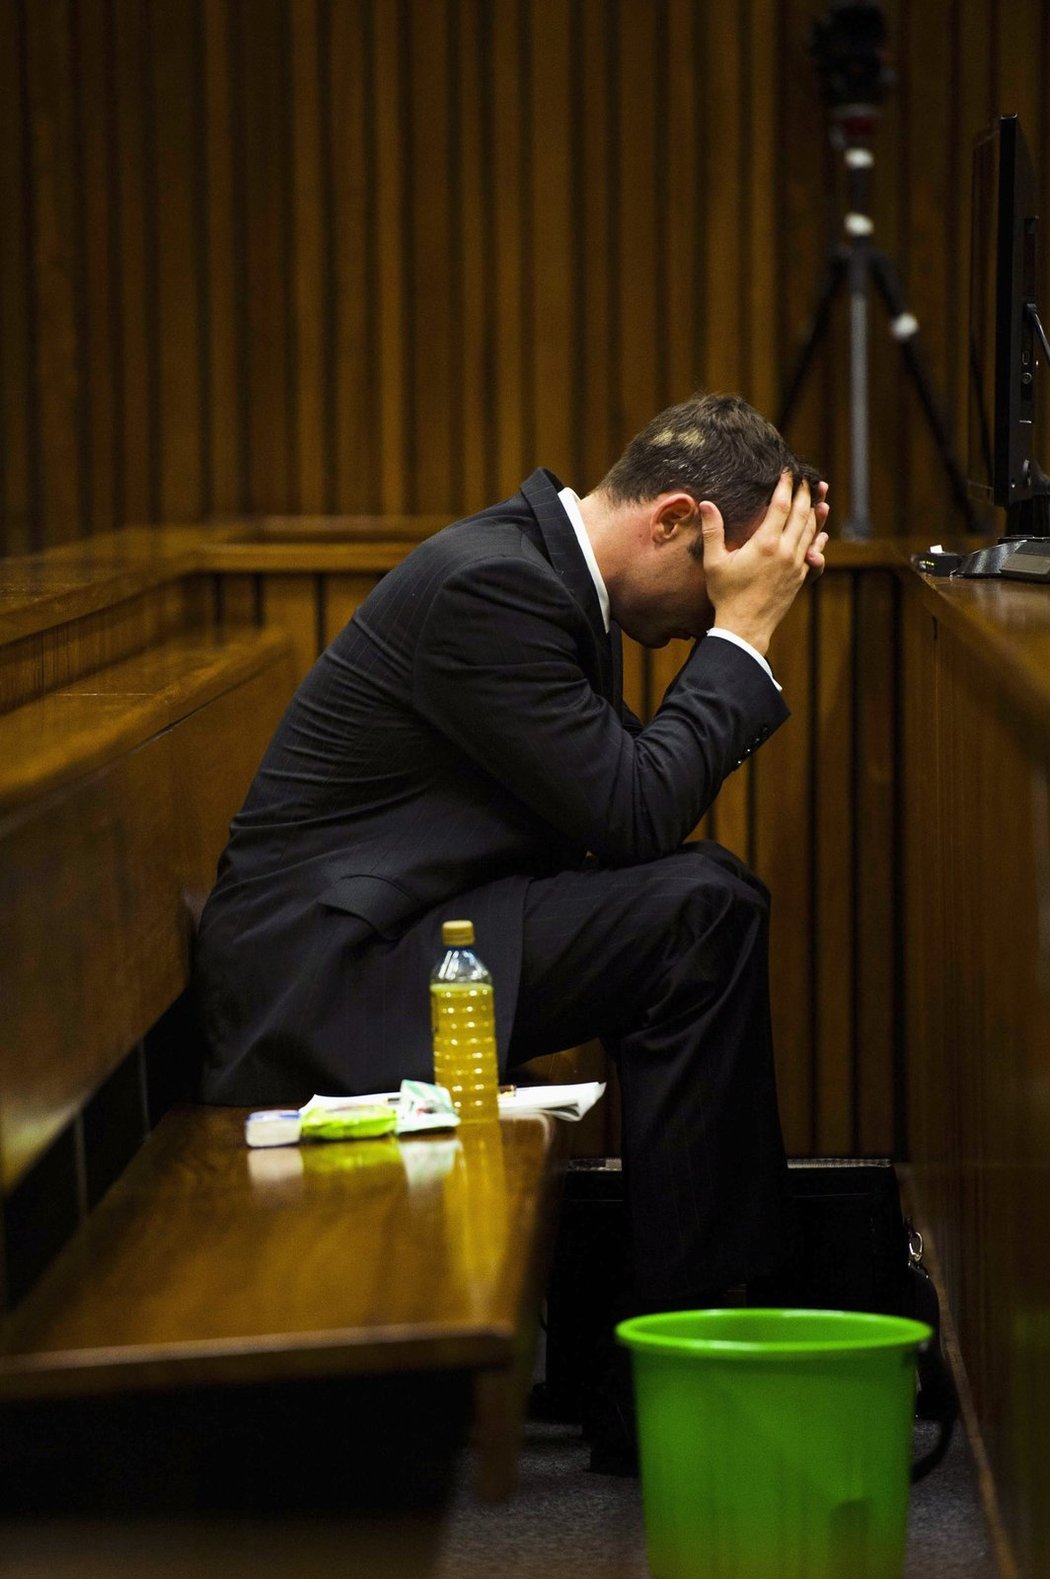 Někdejší paralympijský šampion Oscar Pistorius stojí před soudem kvůli vraždě svojí přítelkyně Reevy Steenkamp. Jihoafrickou modelku měl měl podle obžaloby zastřelit v koupelně svého domu. Během líčení již několikrát zvracel.